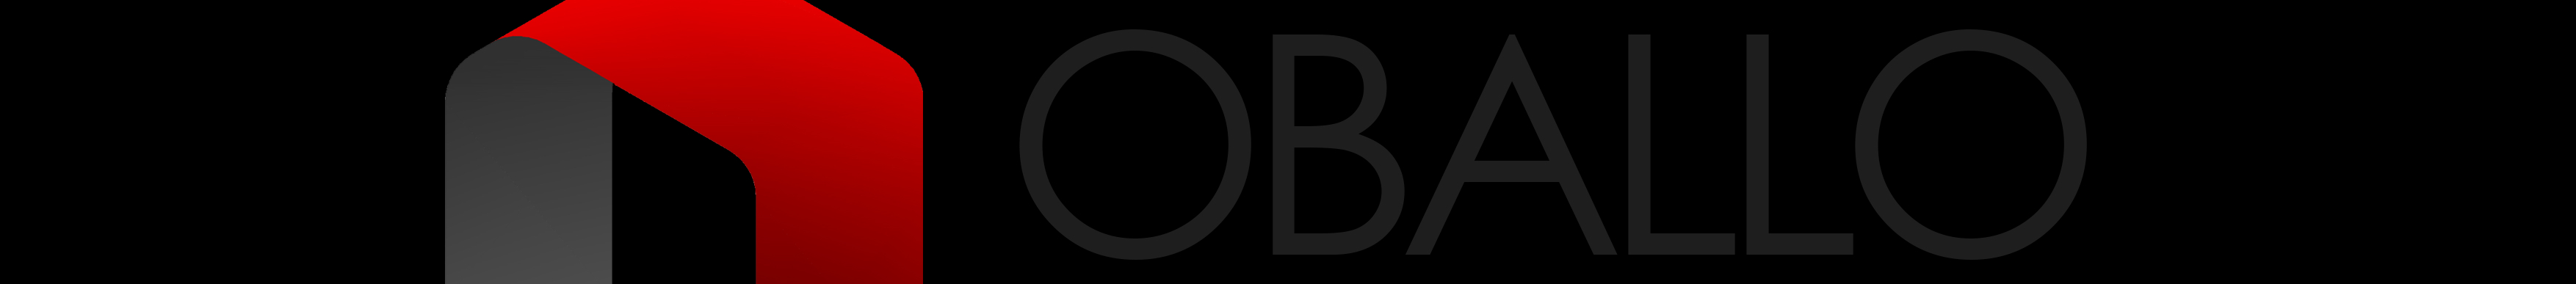 OBALLO DESIGN AND BUILD's profile banner